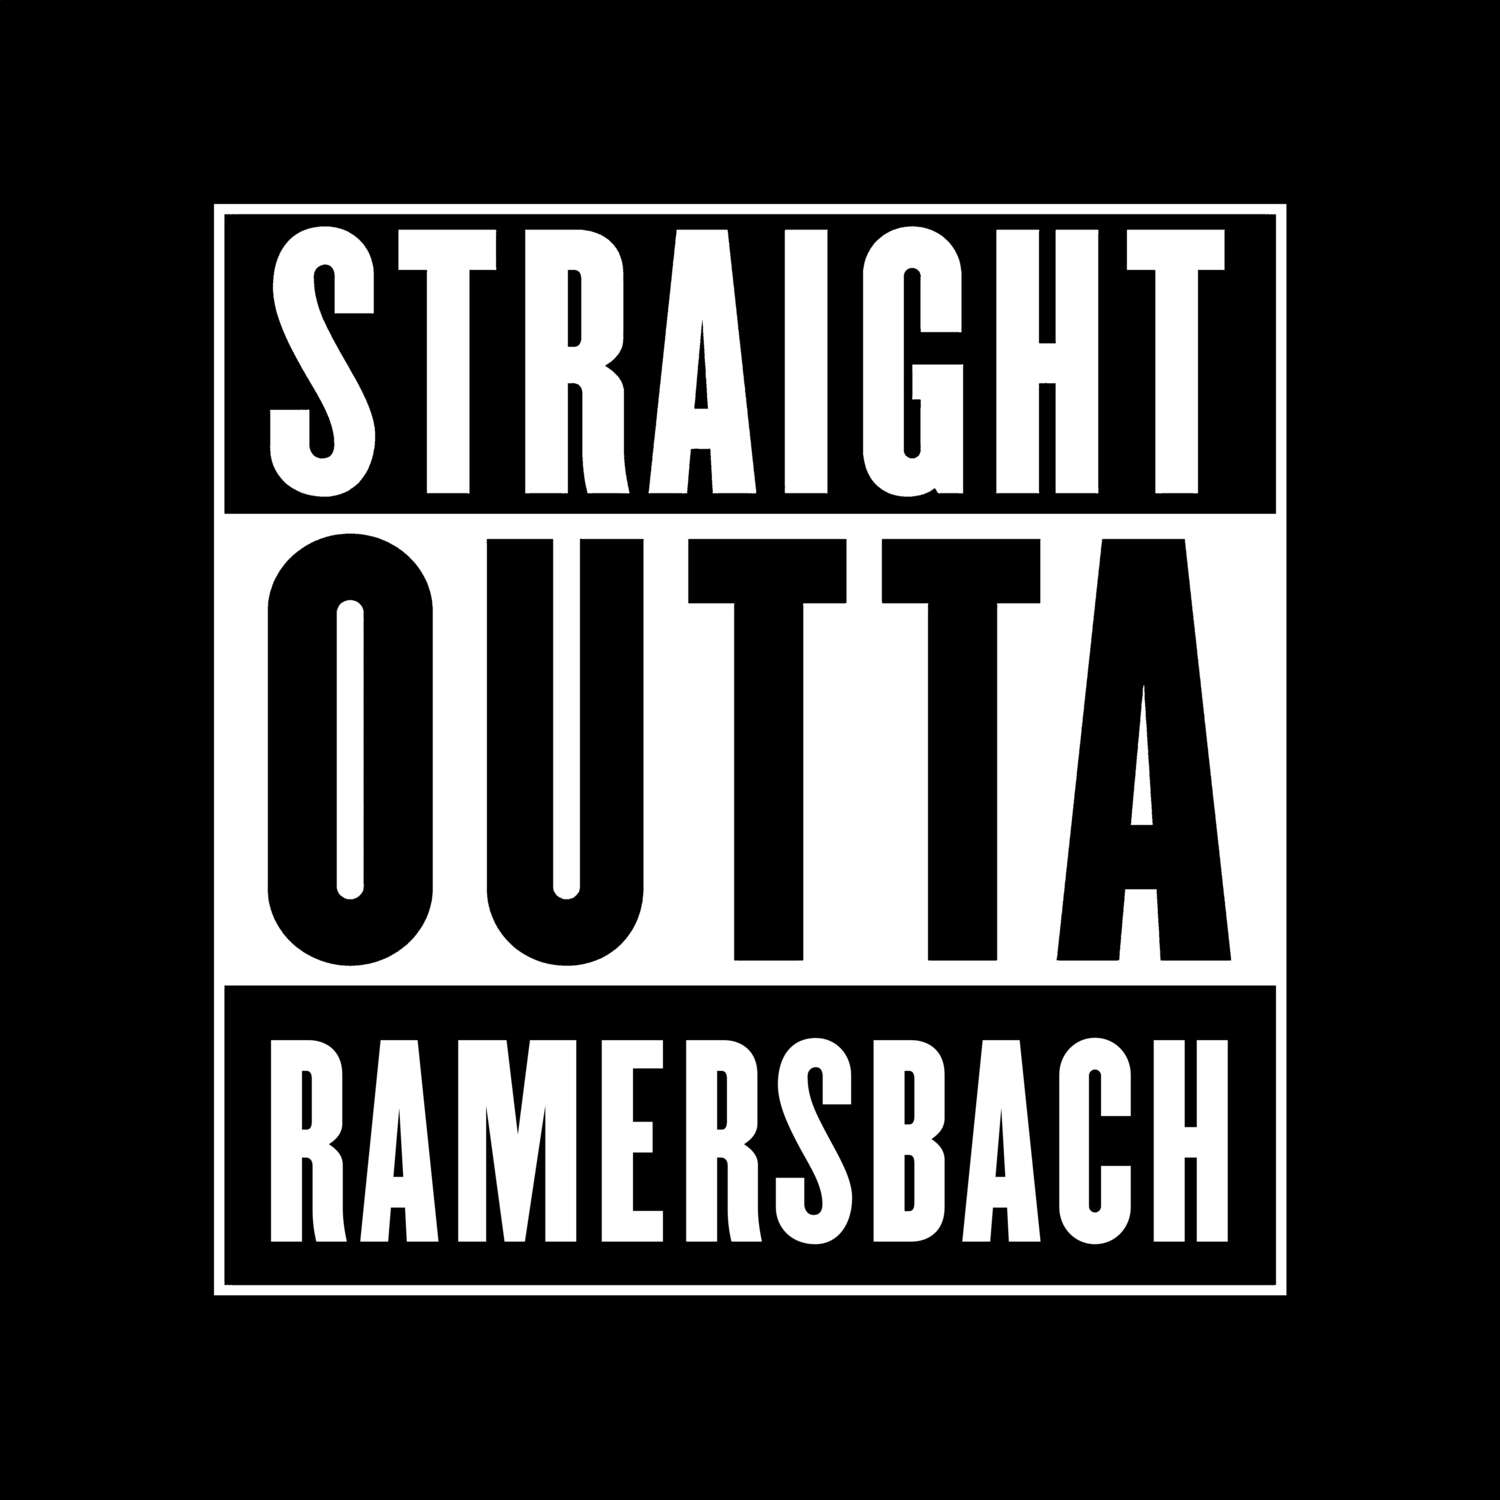 Ramersbach T-Shirt »Straight Outta«